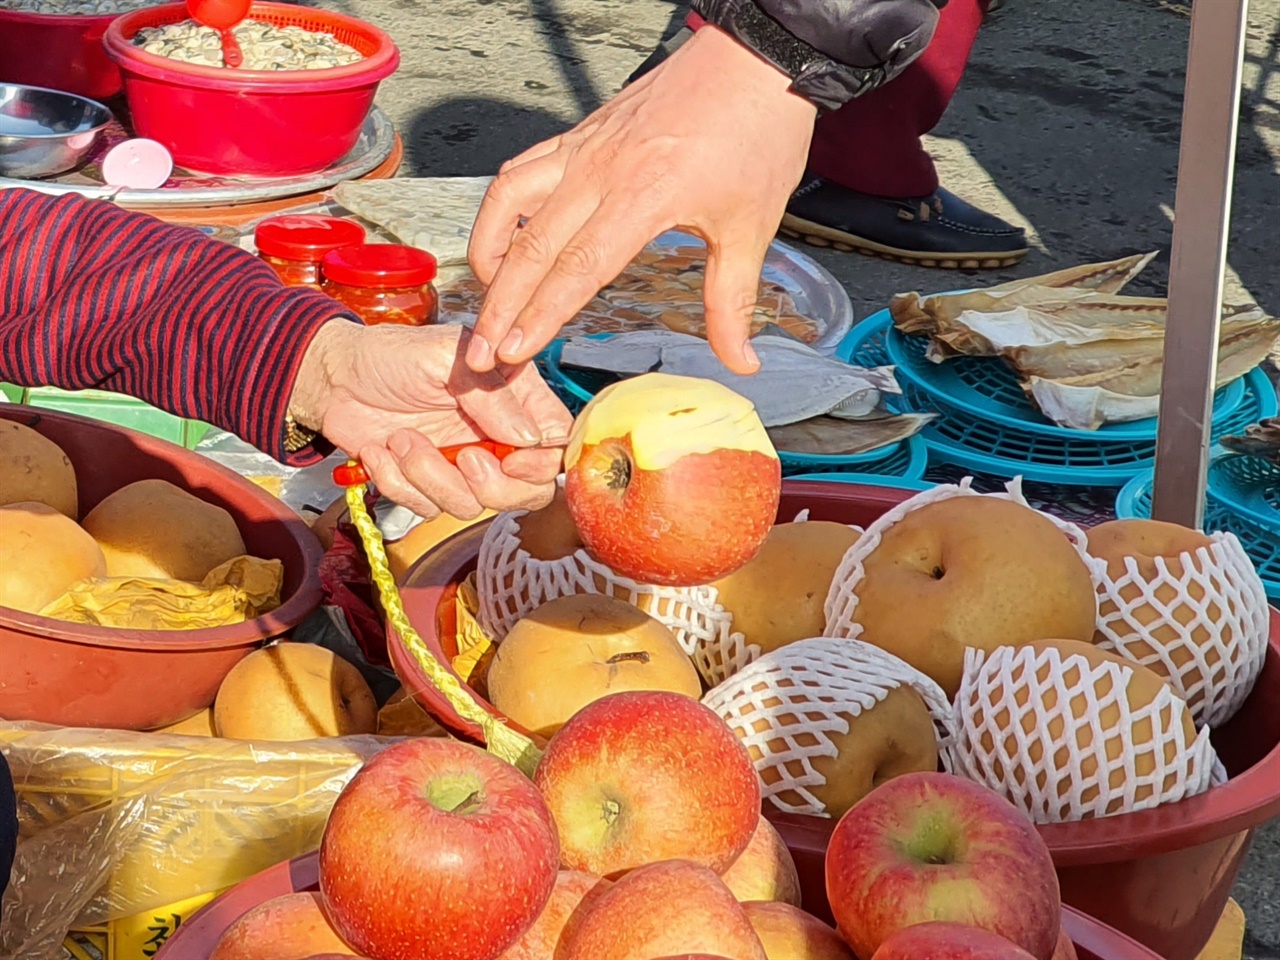 전통시장에서는 새해 덕담과 함께 찾아온 과일도 나눠먹는 장터만의 정이 있다.